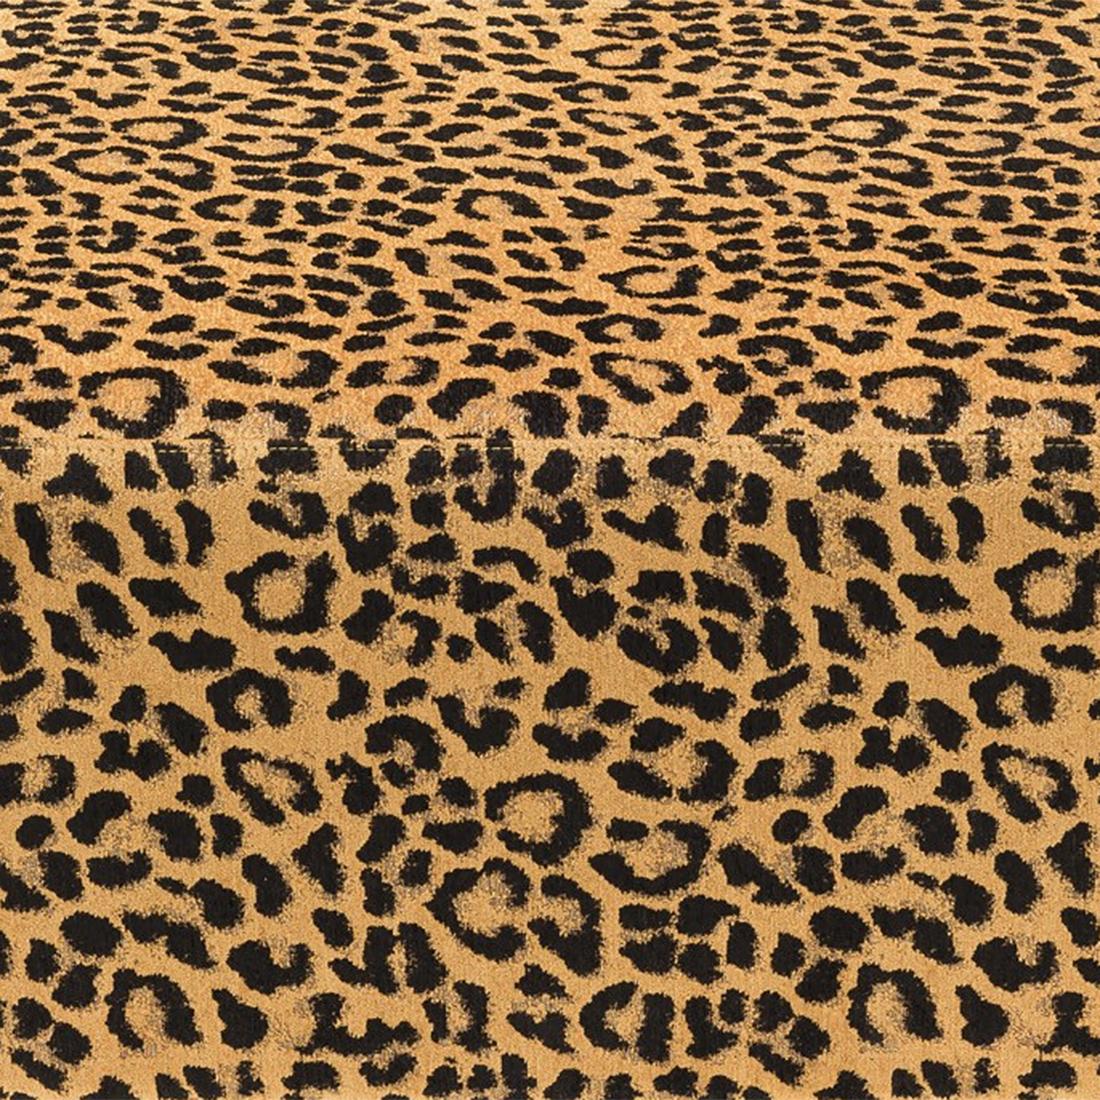 Italian Leopard Pouf For Sale